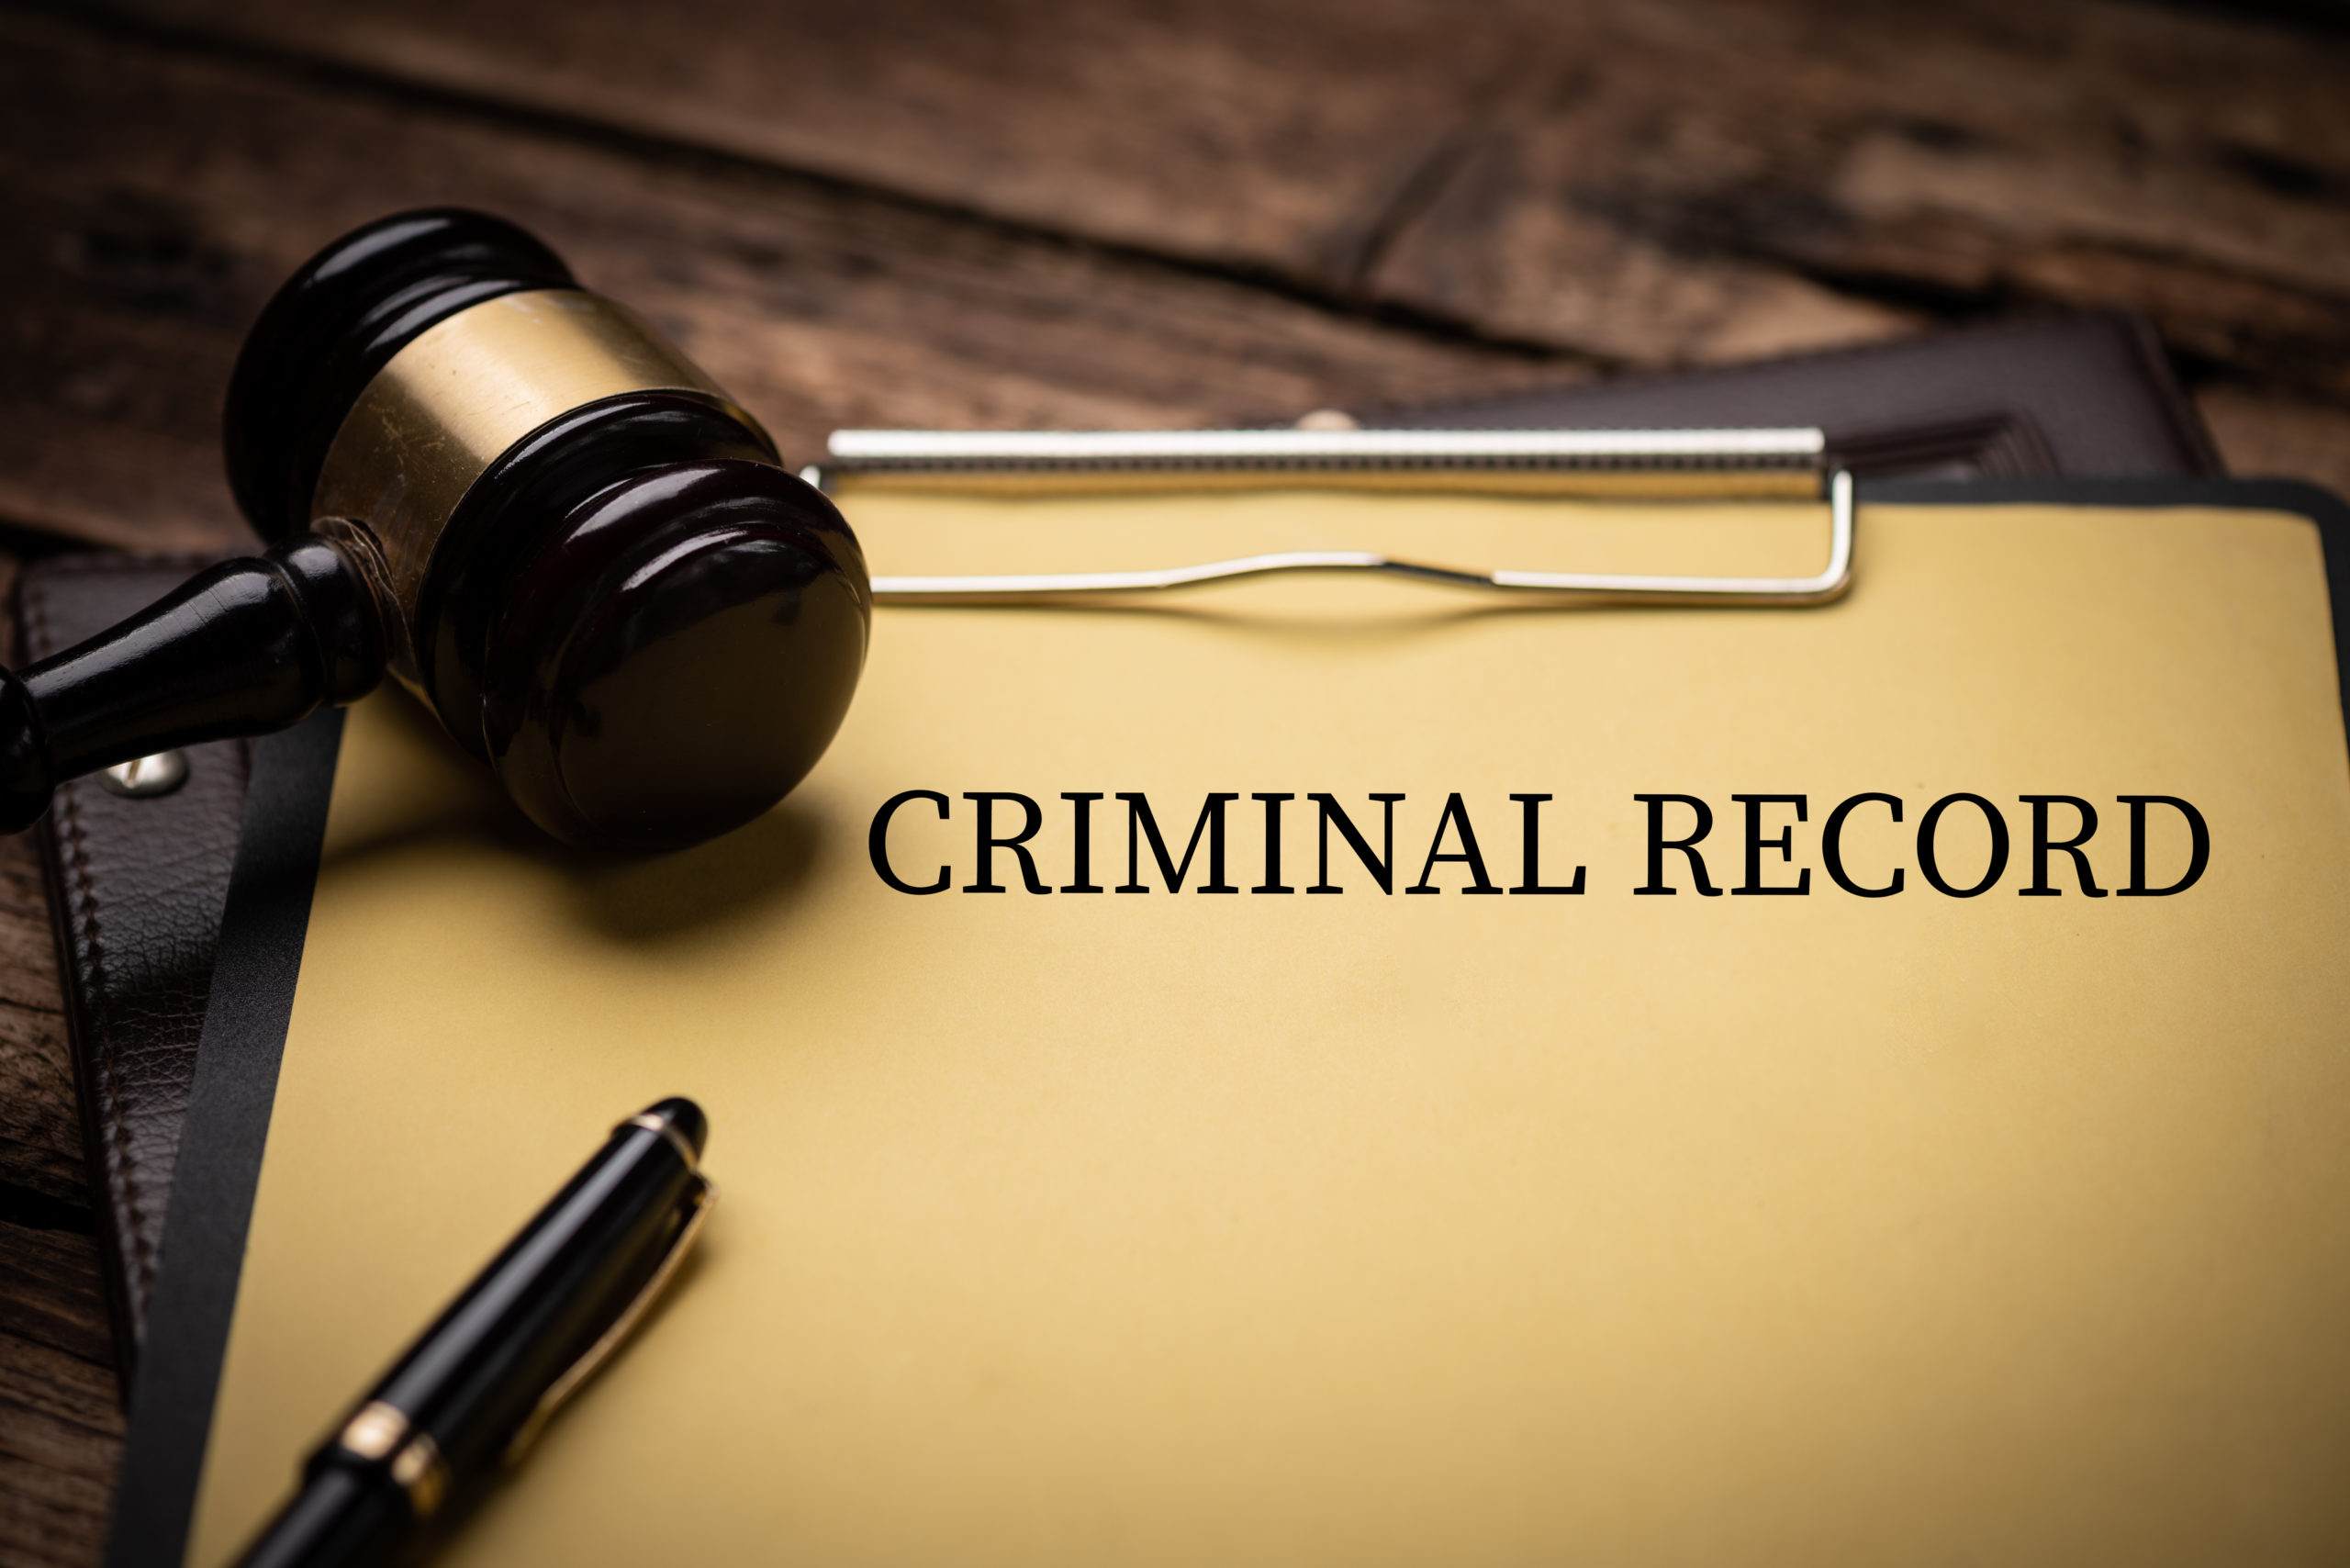 Case Dismissed: Is a Dismissal Always the End of a Criminal Case? [2022]